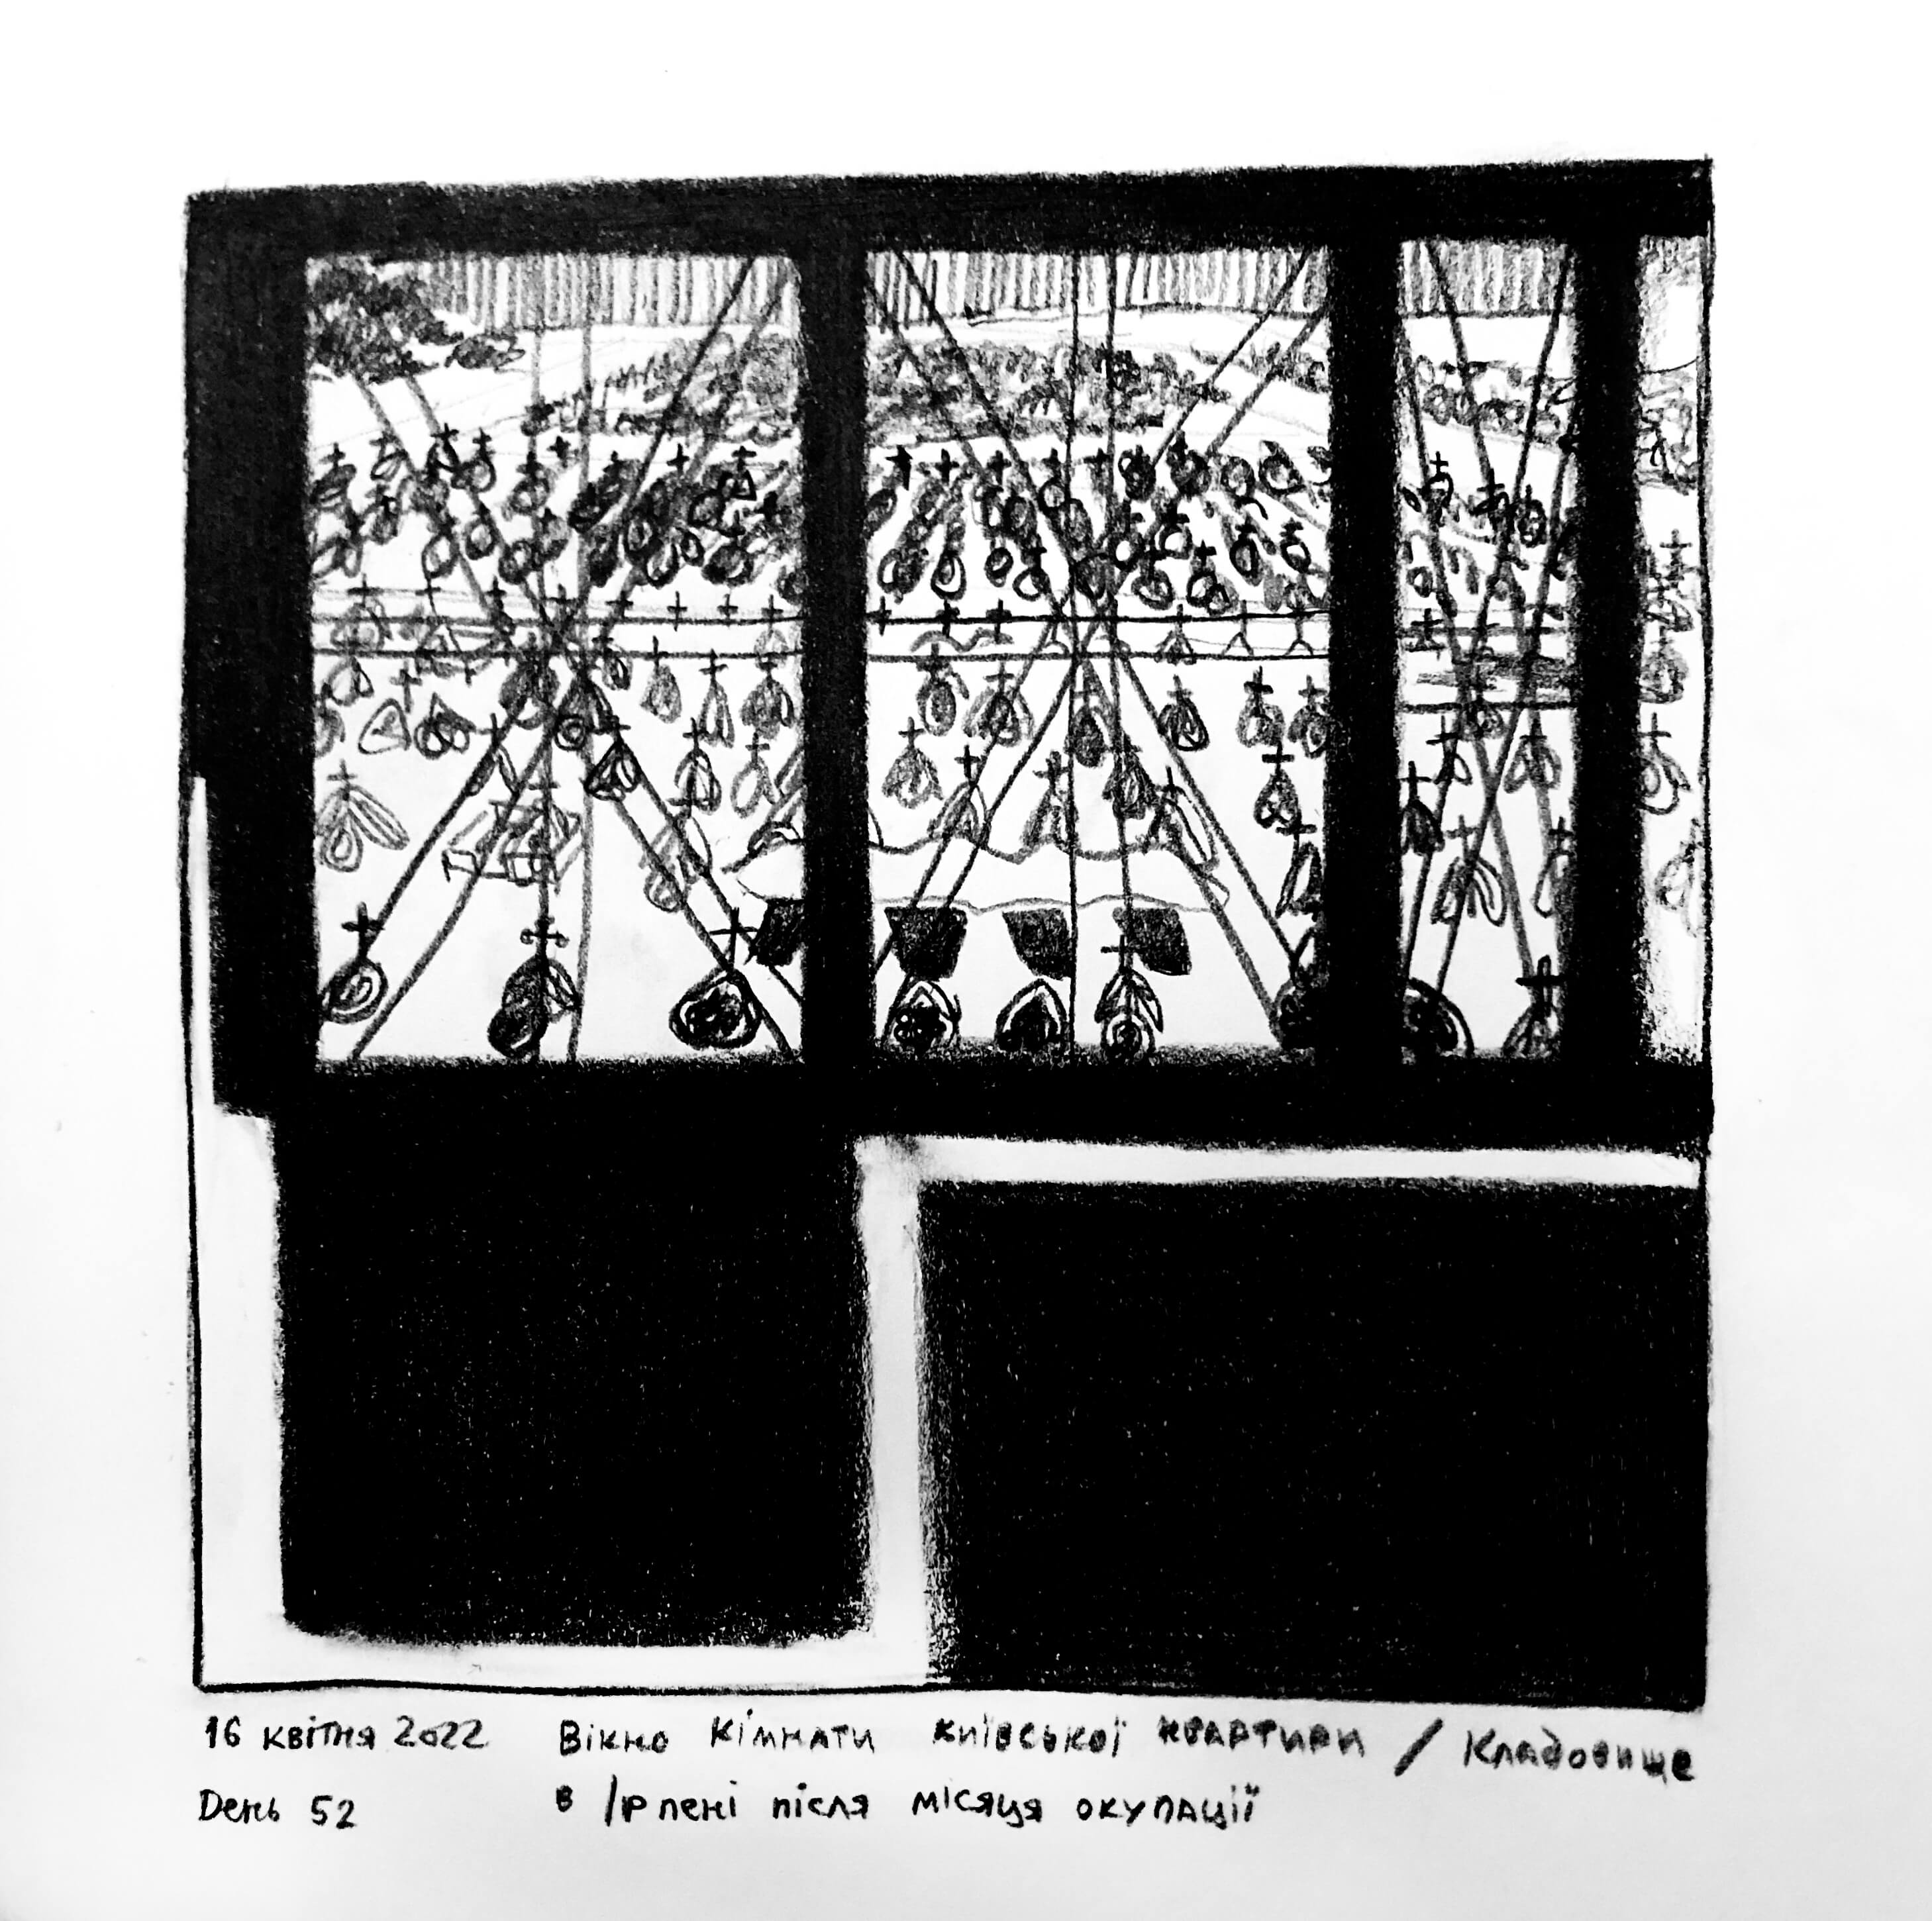 16 квітня. Вікно кімнати київської квартири / Кладовище Ірпеня після місяця окупації